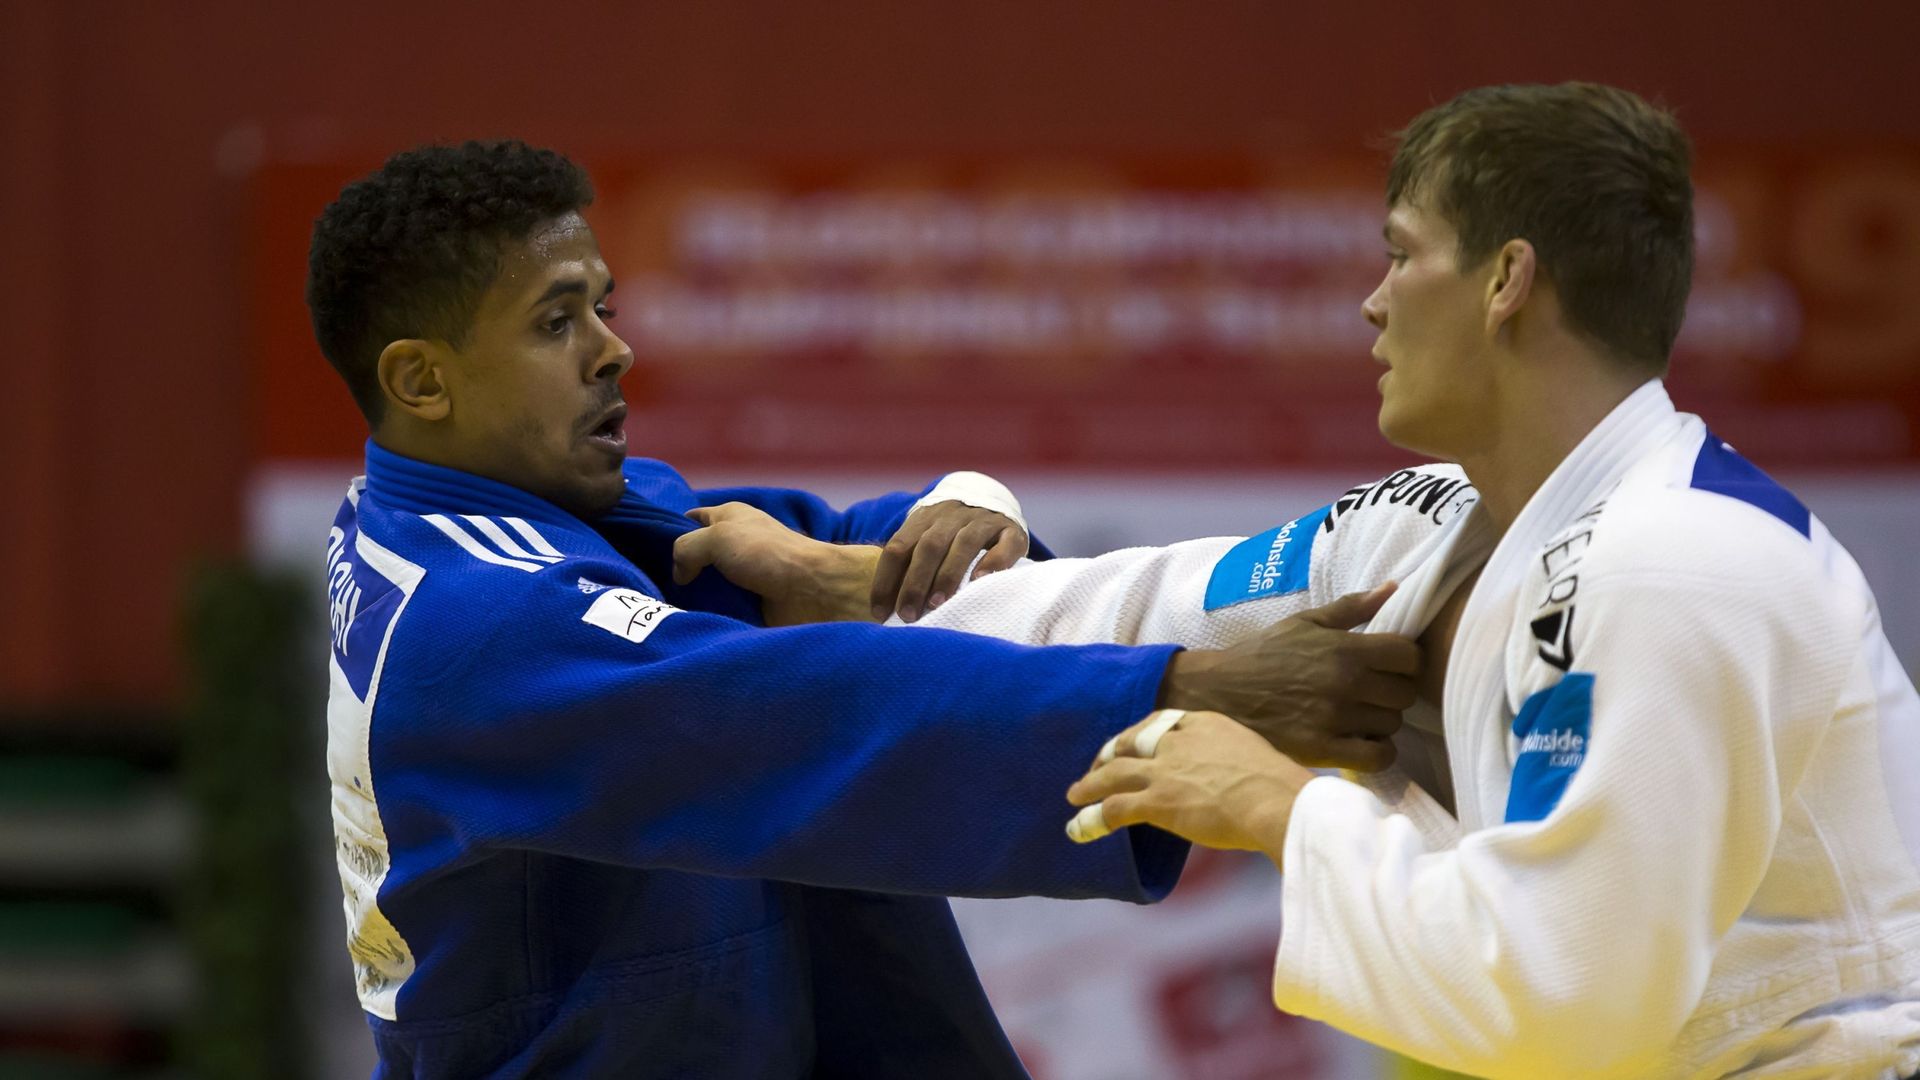 Euro de Judo : Matthias Casse et Sami Chouchi pourraient se croiser en quarts, Nikiforov pas gâté